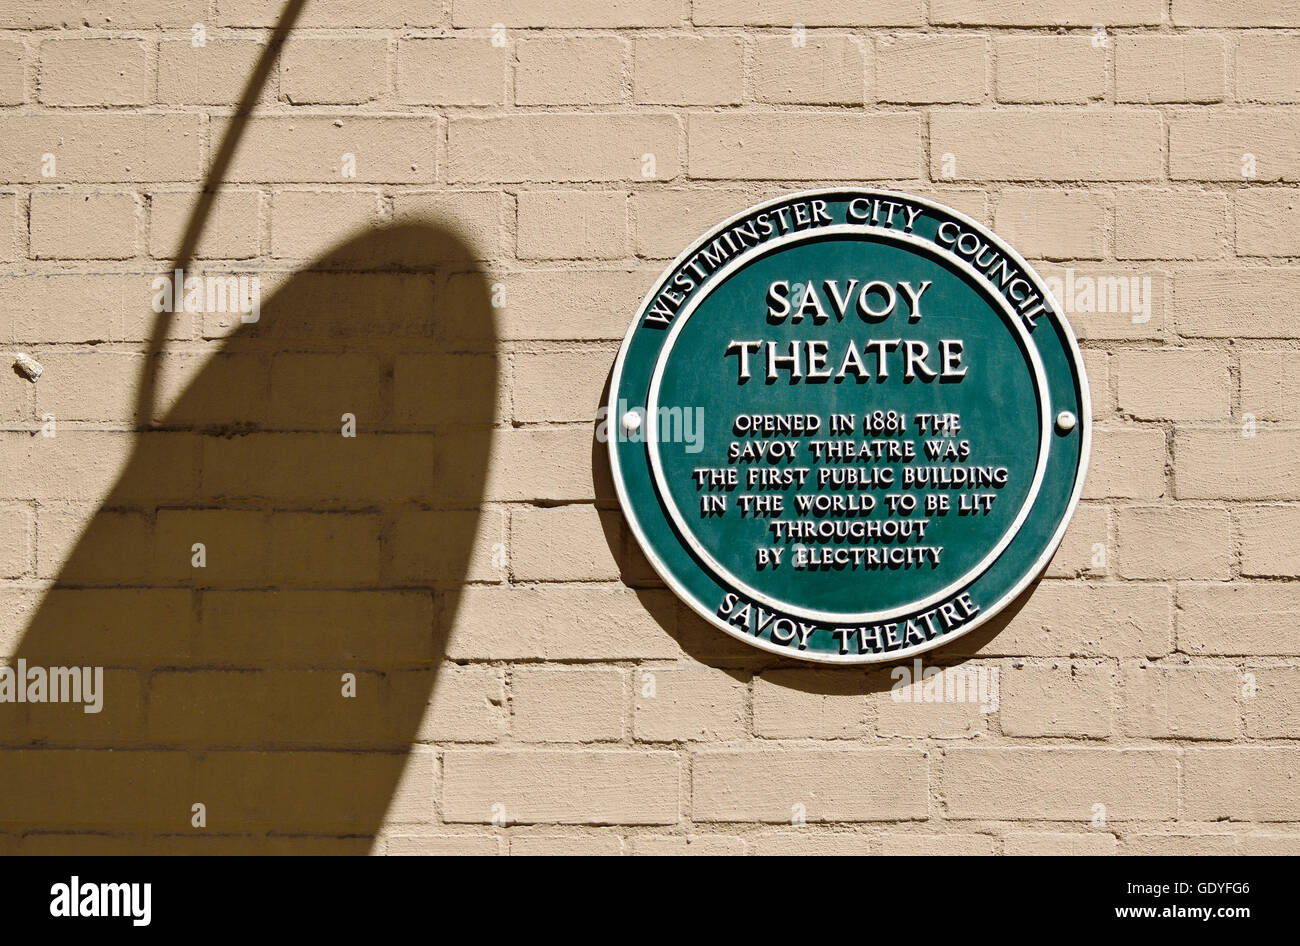 Londra, Inghilterra, Regno Unito. Una lapide commemorativa: Savoy Theatre - primo edificio pubblico in tutto il mondo per essere illuminato da energia elettrica (1881) Foto Stock